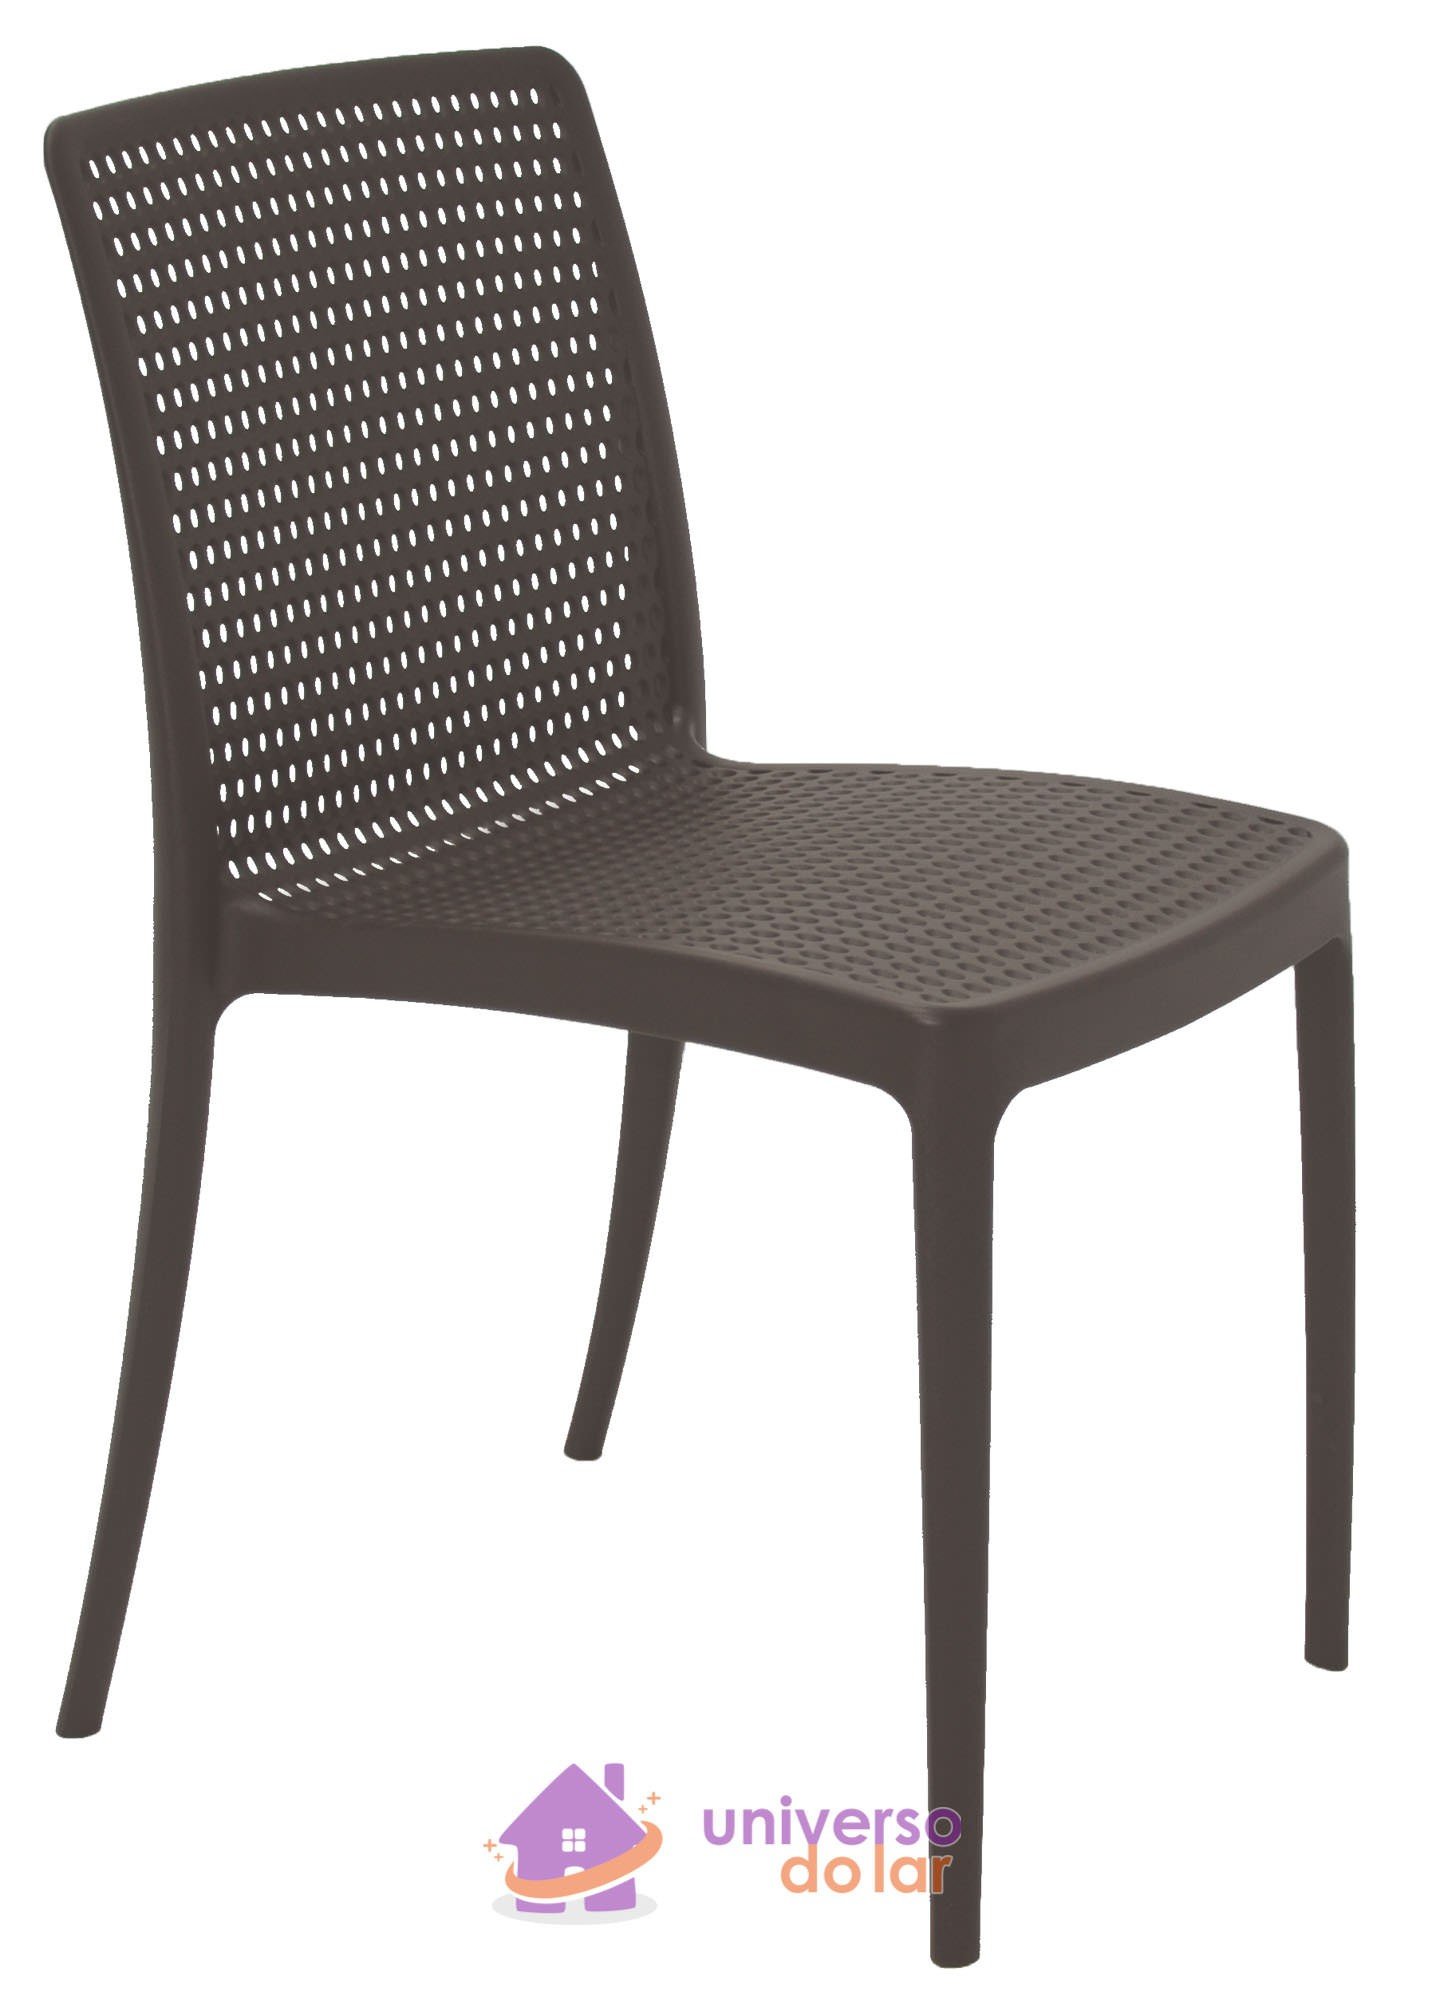 Cadeira Isabelle em Polipropileno e Fibra de Vidro Marrom